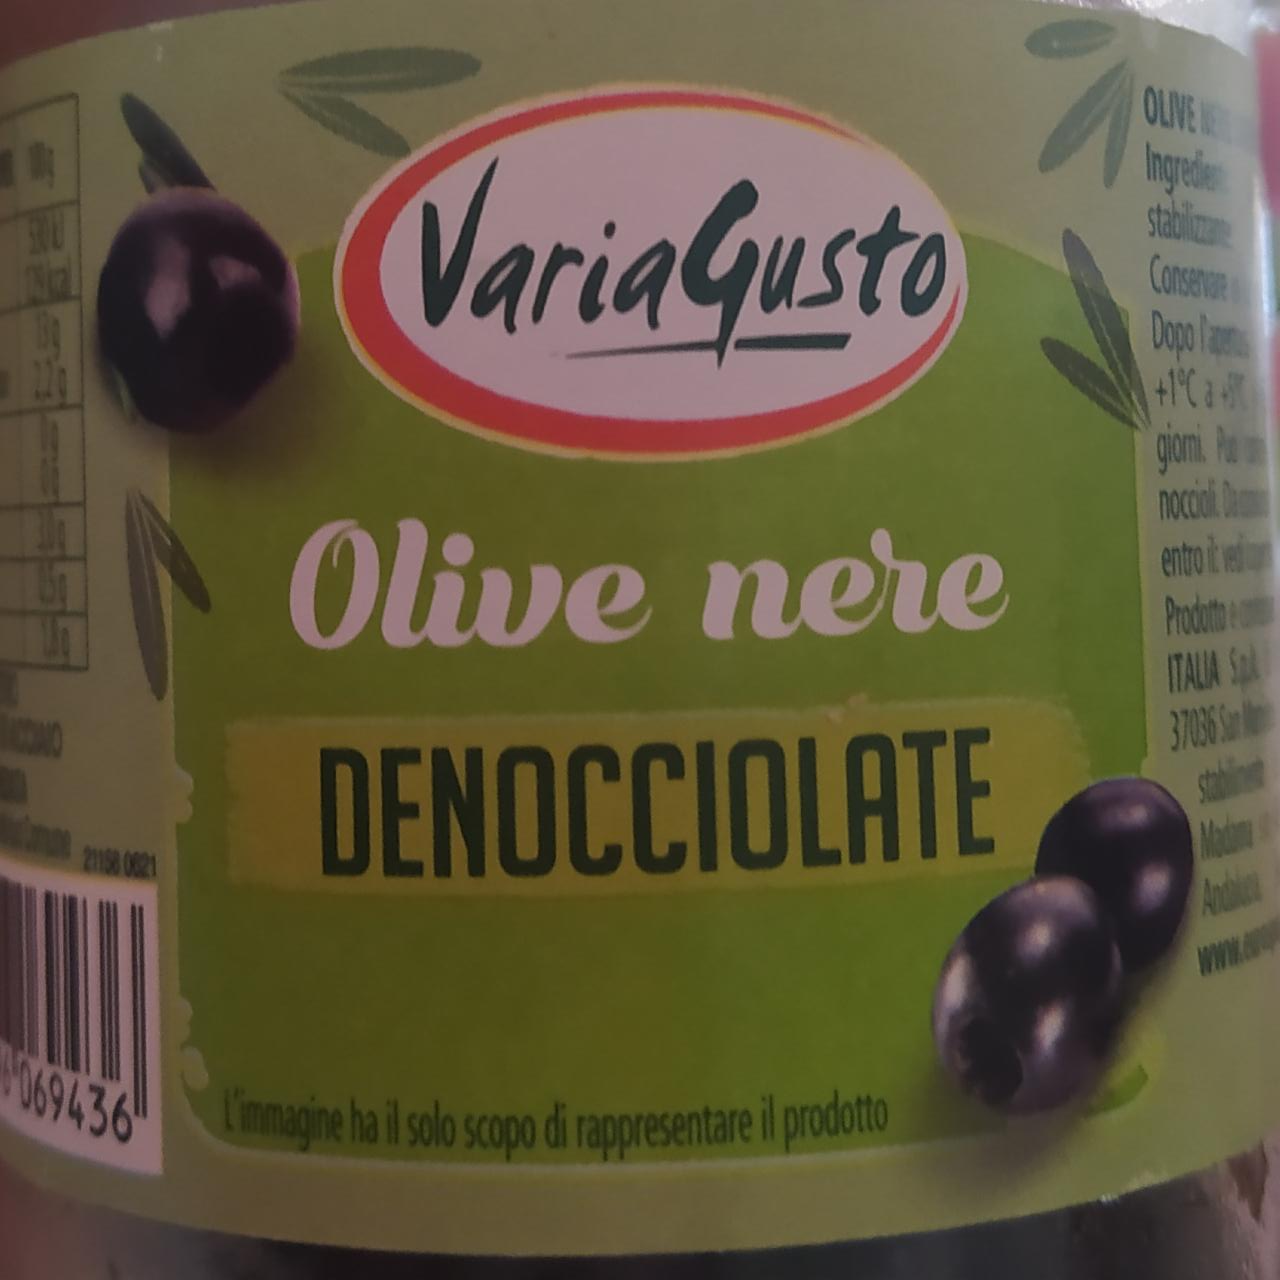 Фото - Olive nere denocciolate VariaGusto